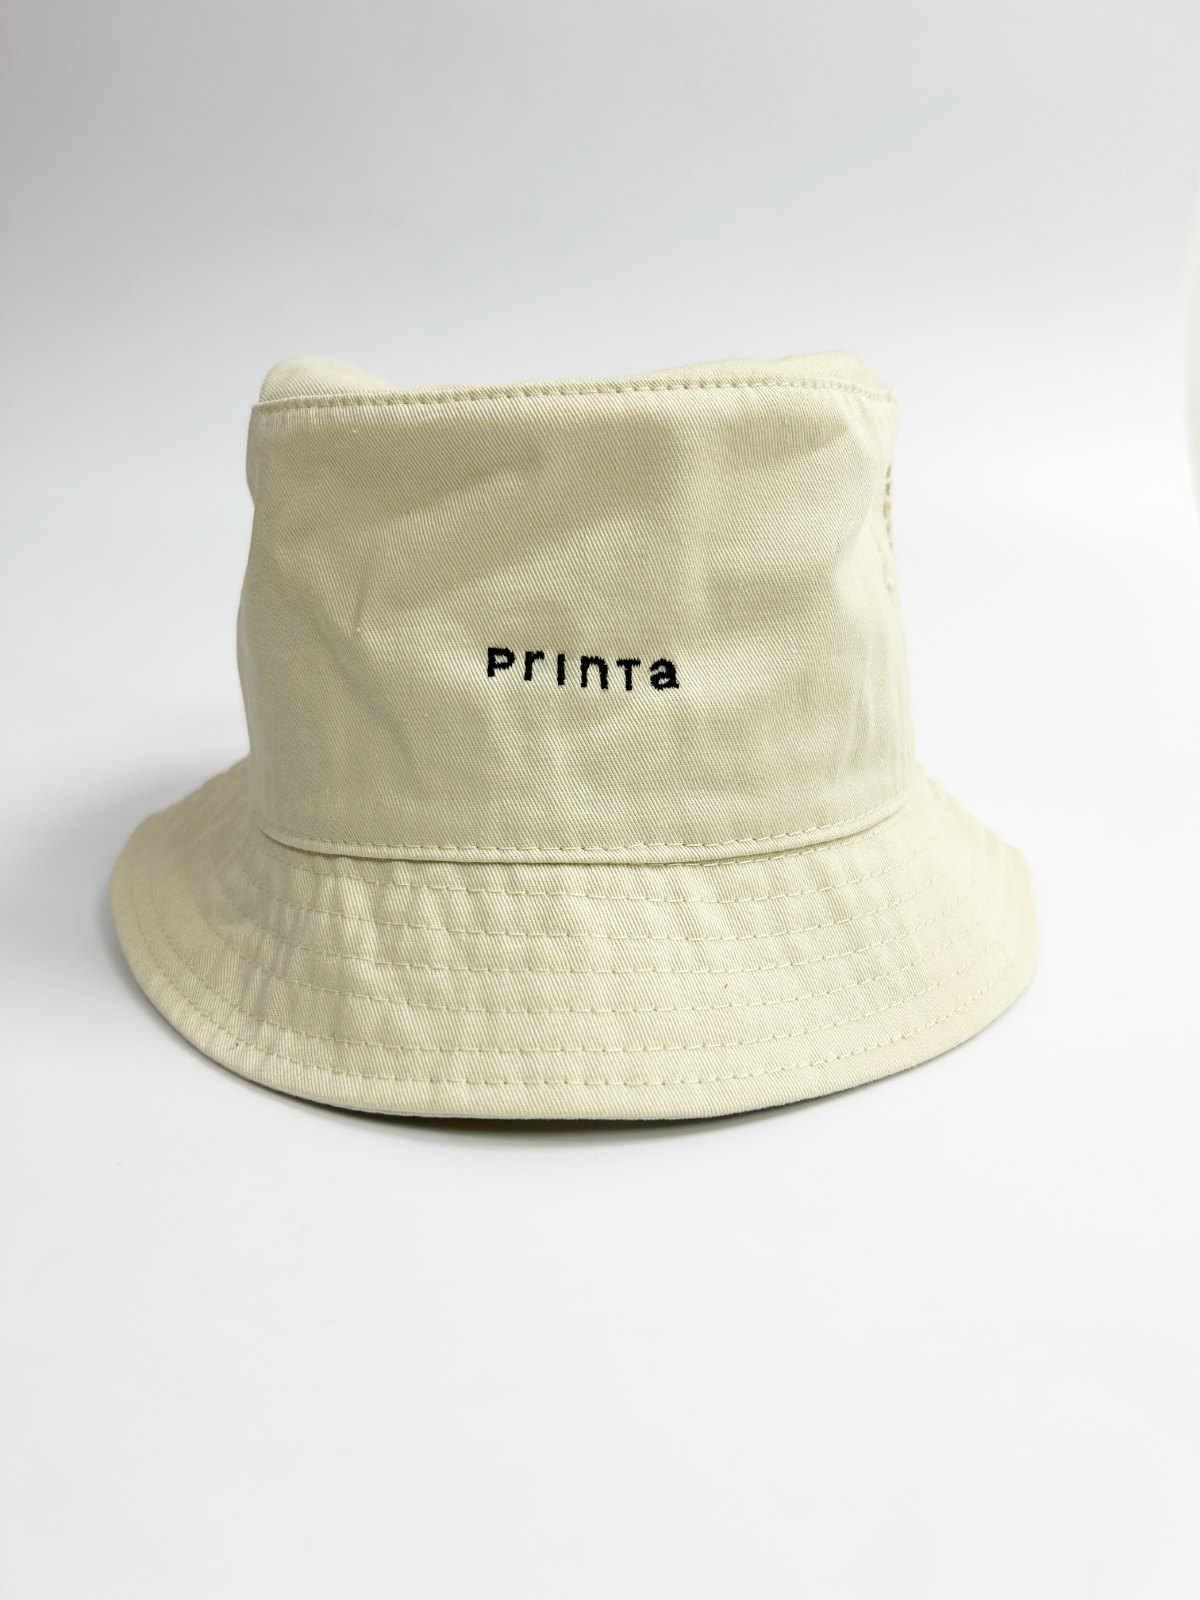 "Printa" natural embroidered fishing cap